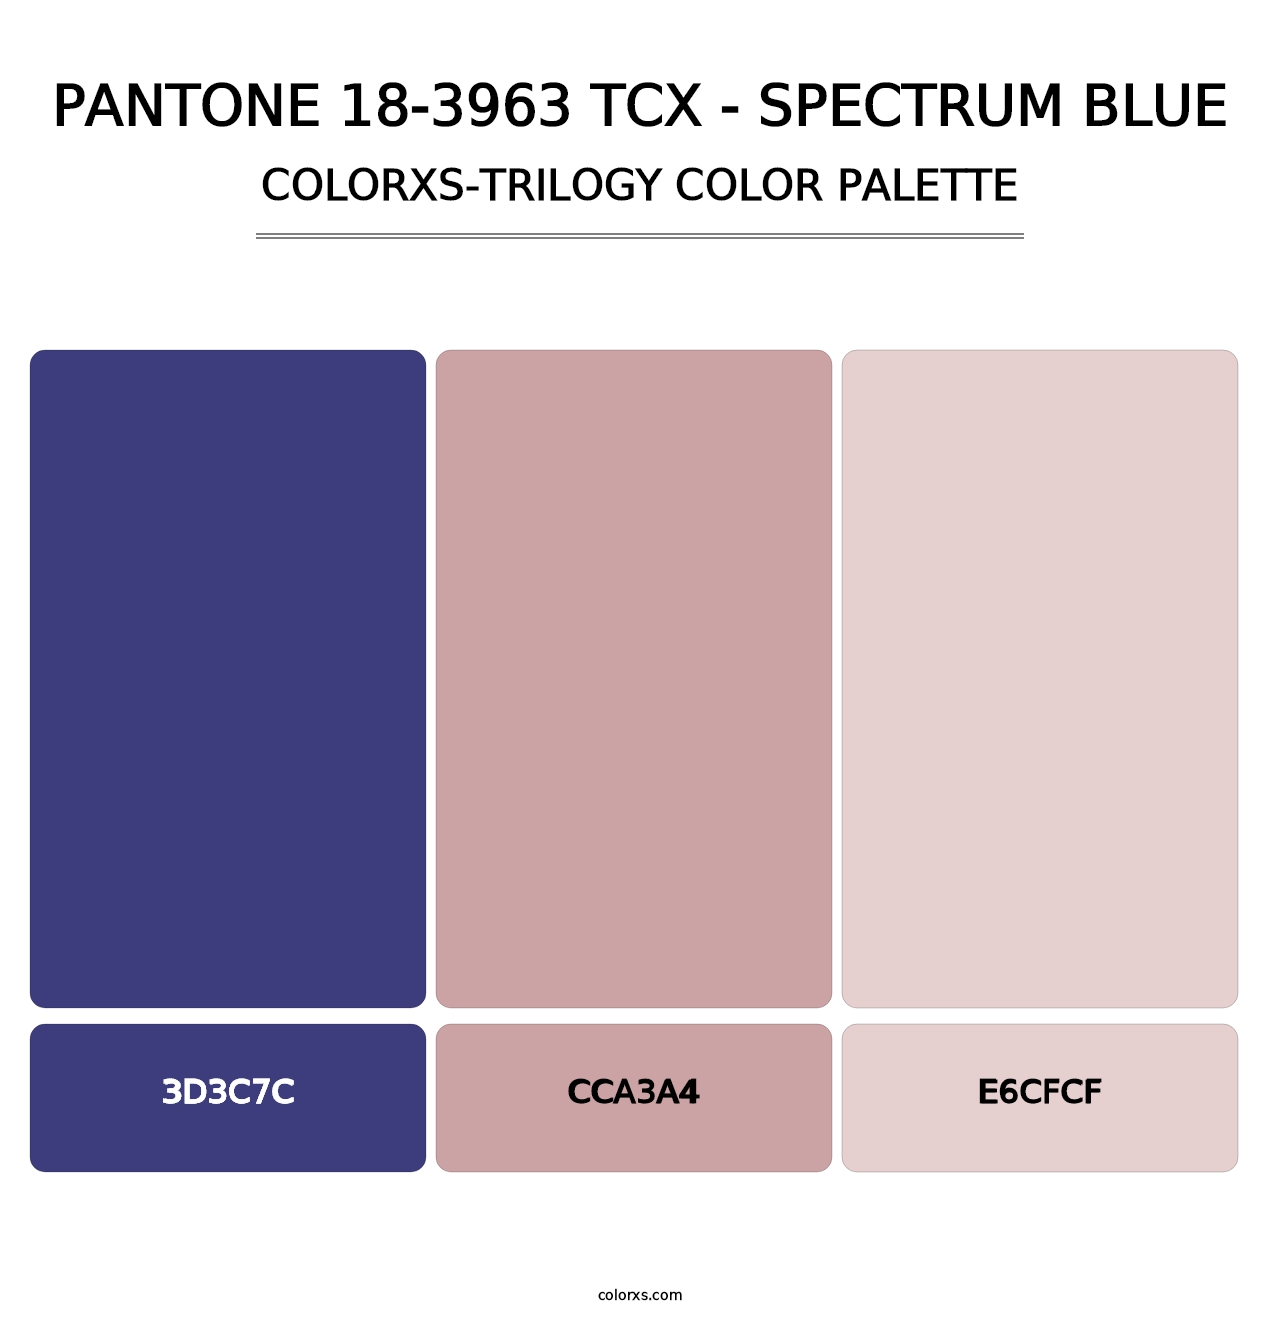 PANTONE 18-3963 TCX - Spectrum Blue - Colorxs Trilogy Palette